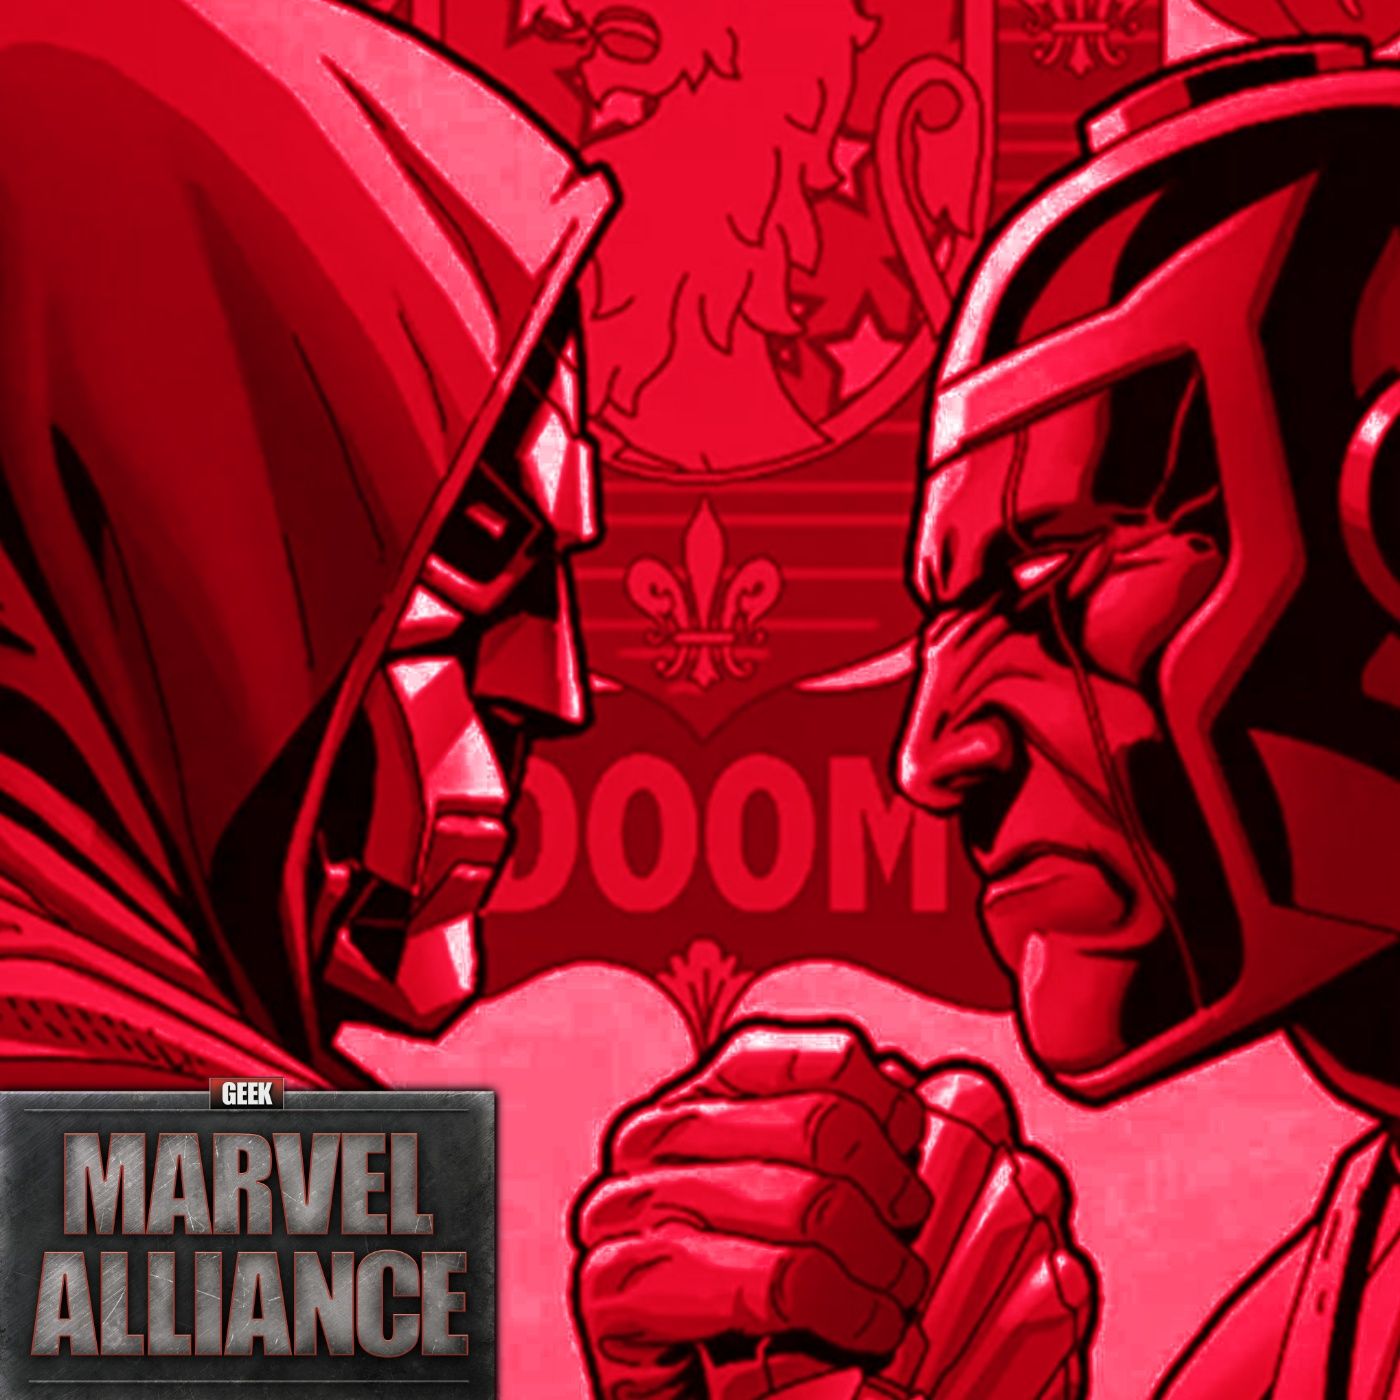 Jonathan Majors Fired From Marvel, What’s Next For Kang? : Marvel Alliance Vol. 195